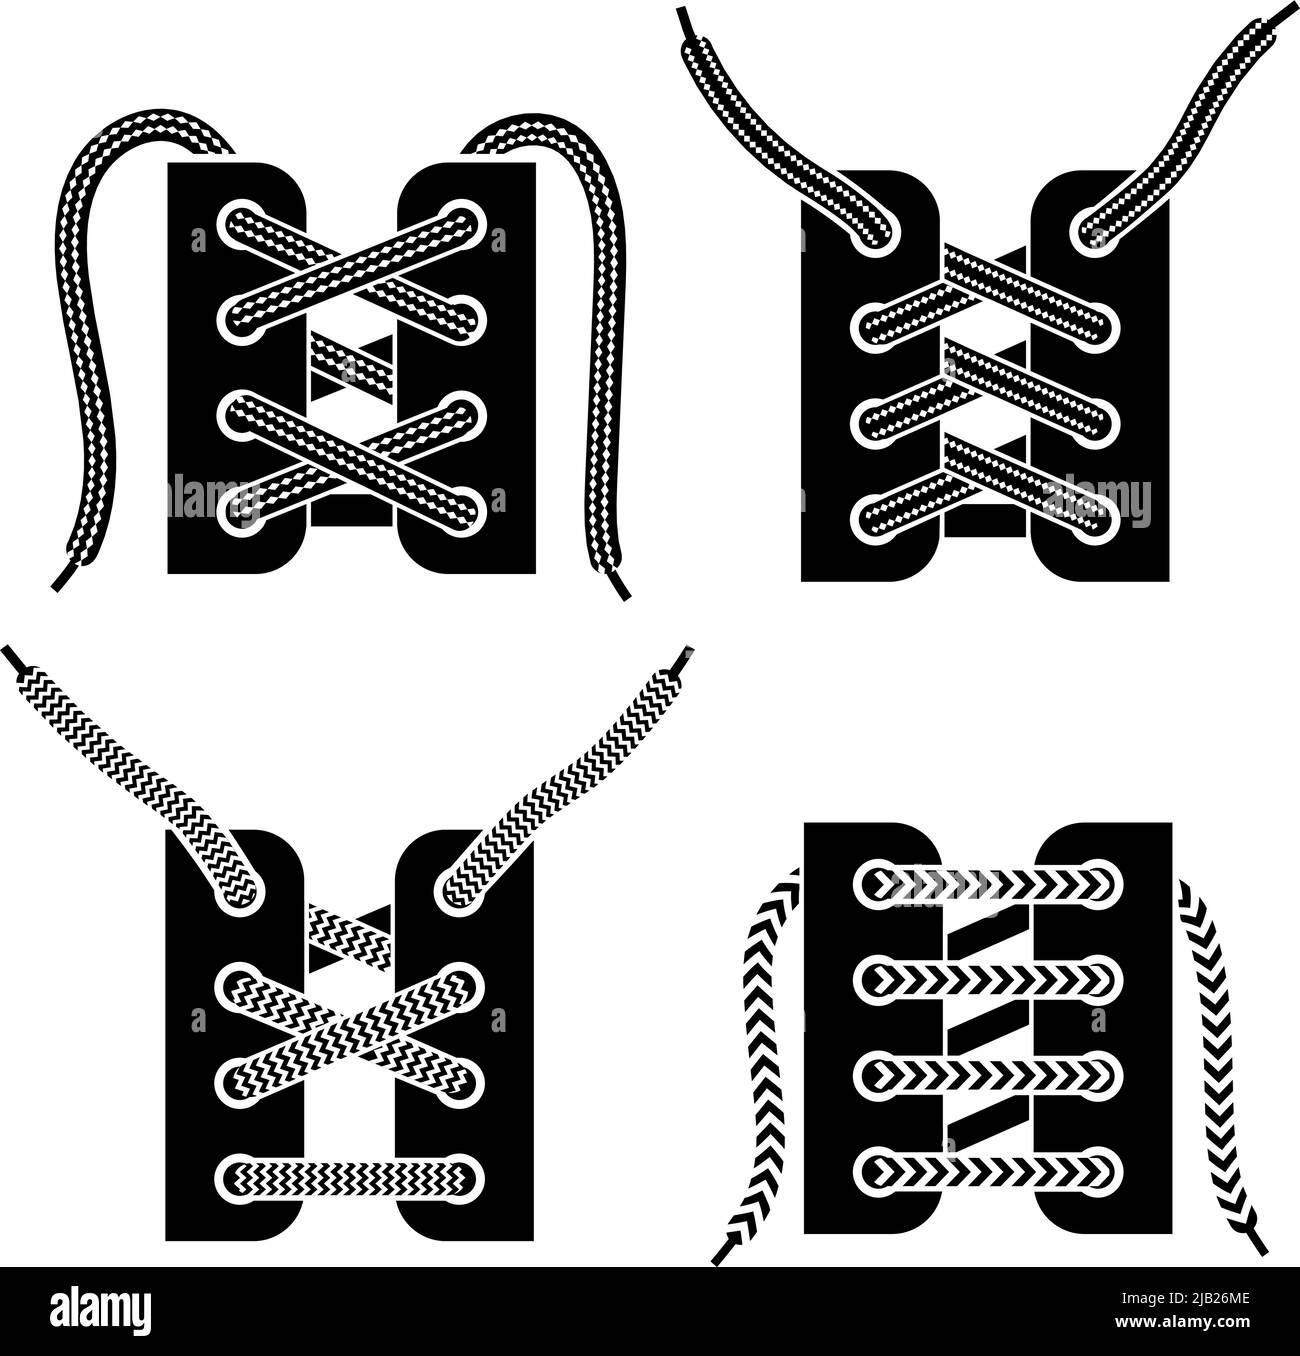 Barre droite à la mode et entrecroisée bottes militaires laçage de  chaussures 4 icônes noires ensemble d'illustrations vectorielles isolées  Image Vectorielle Stock - Alamy